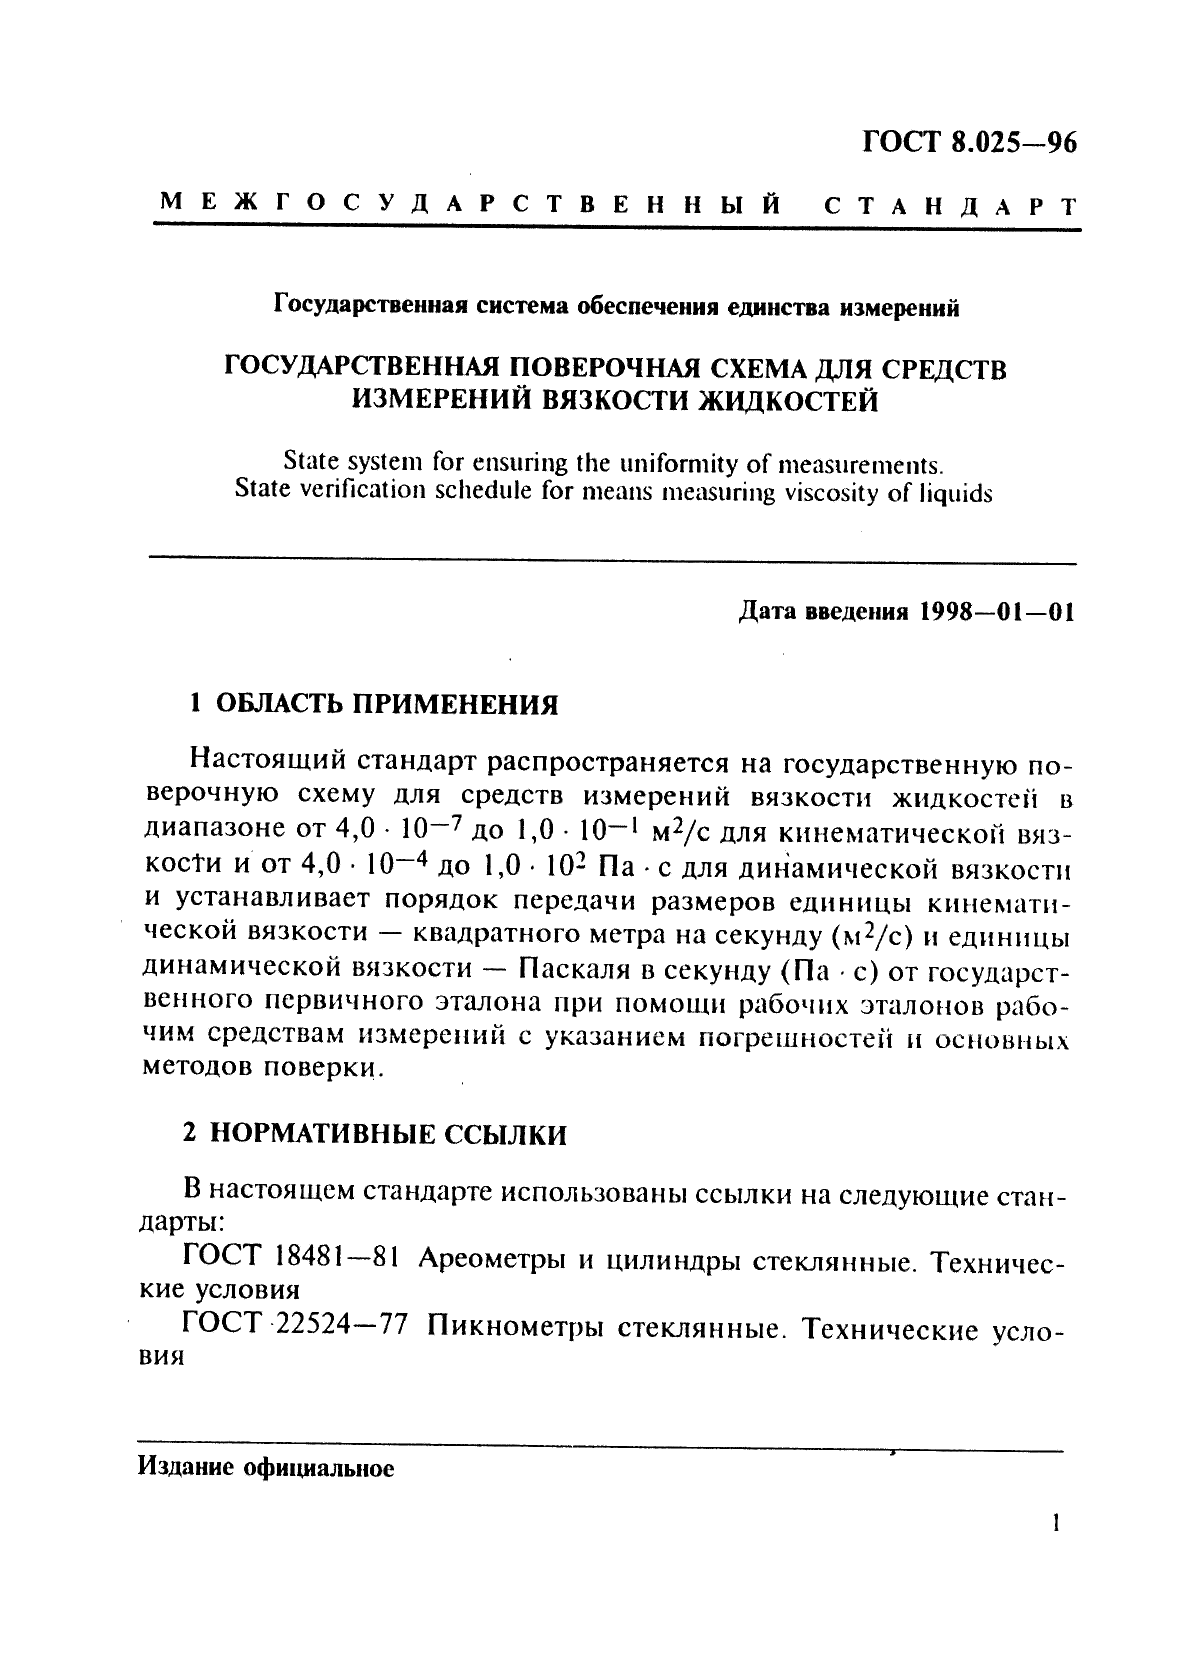 ГОСТ 8.025-96 Государственная система обеспечения единства измерений. Государственная поверочная схема для средств измерений вязкости жидкостей (фото 4 из 8)